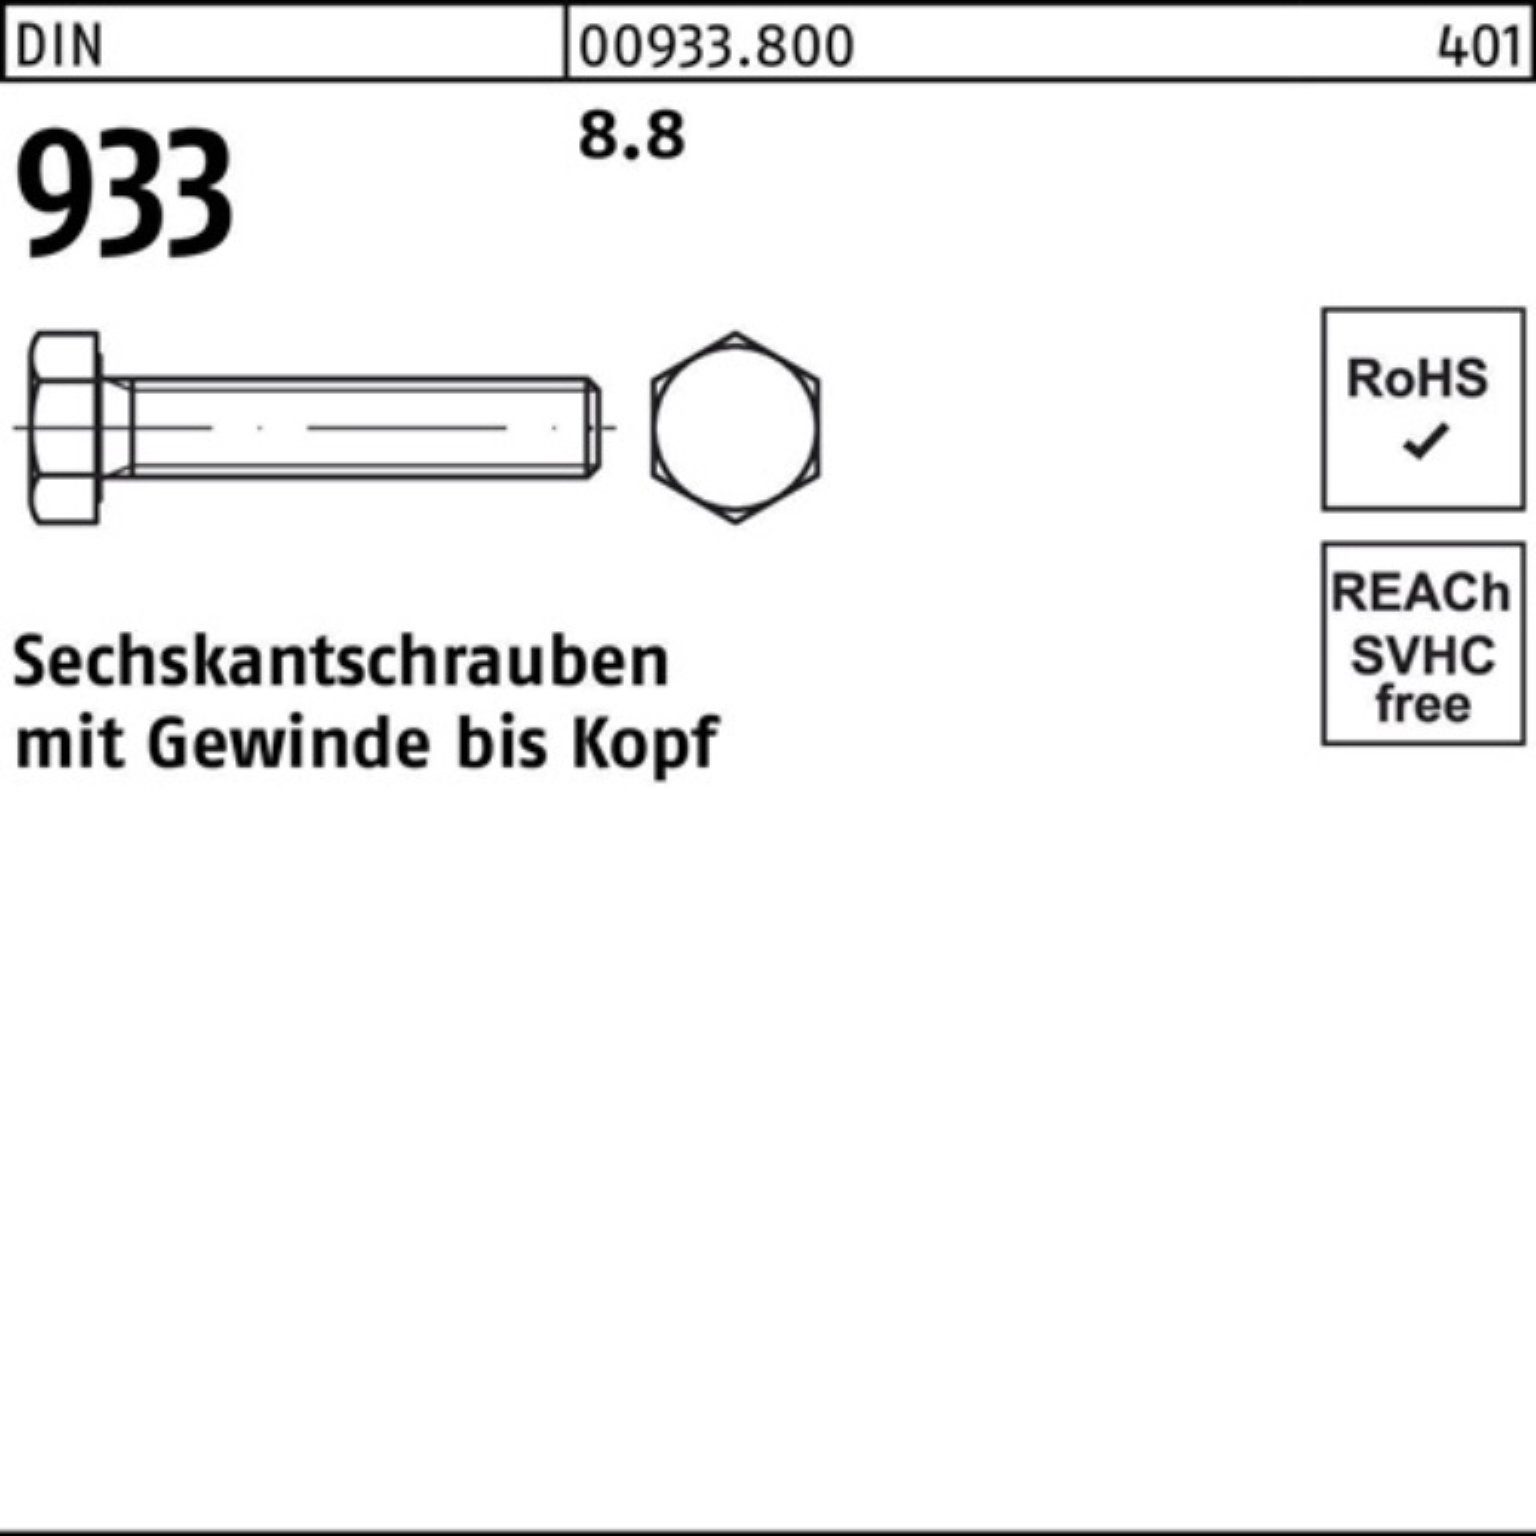 Reyher Sechskantschraube 100er 8.8 Stück 933 Sechskantschraube DIN 10 933 M22x DIN Pack VG 120